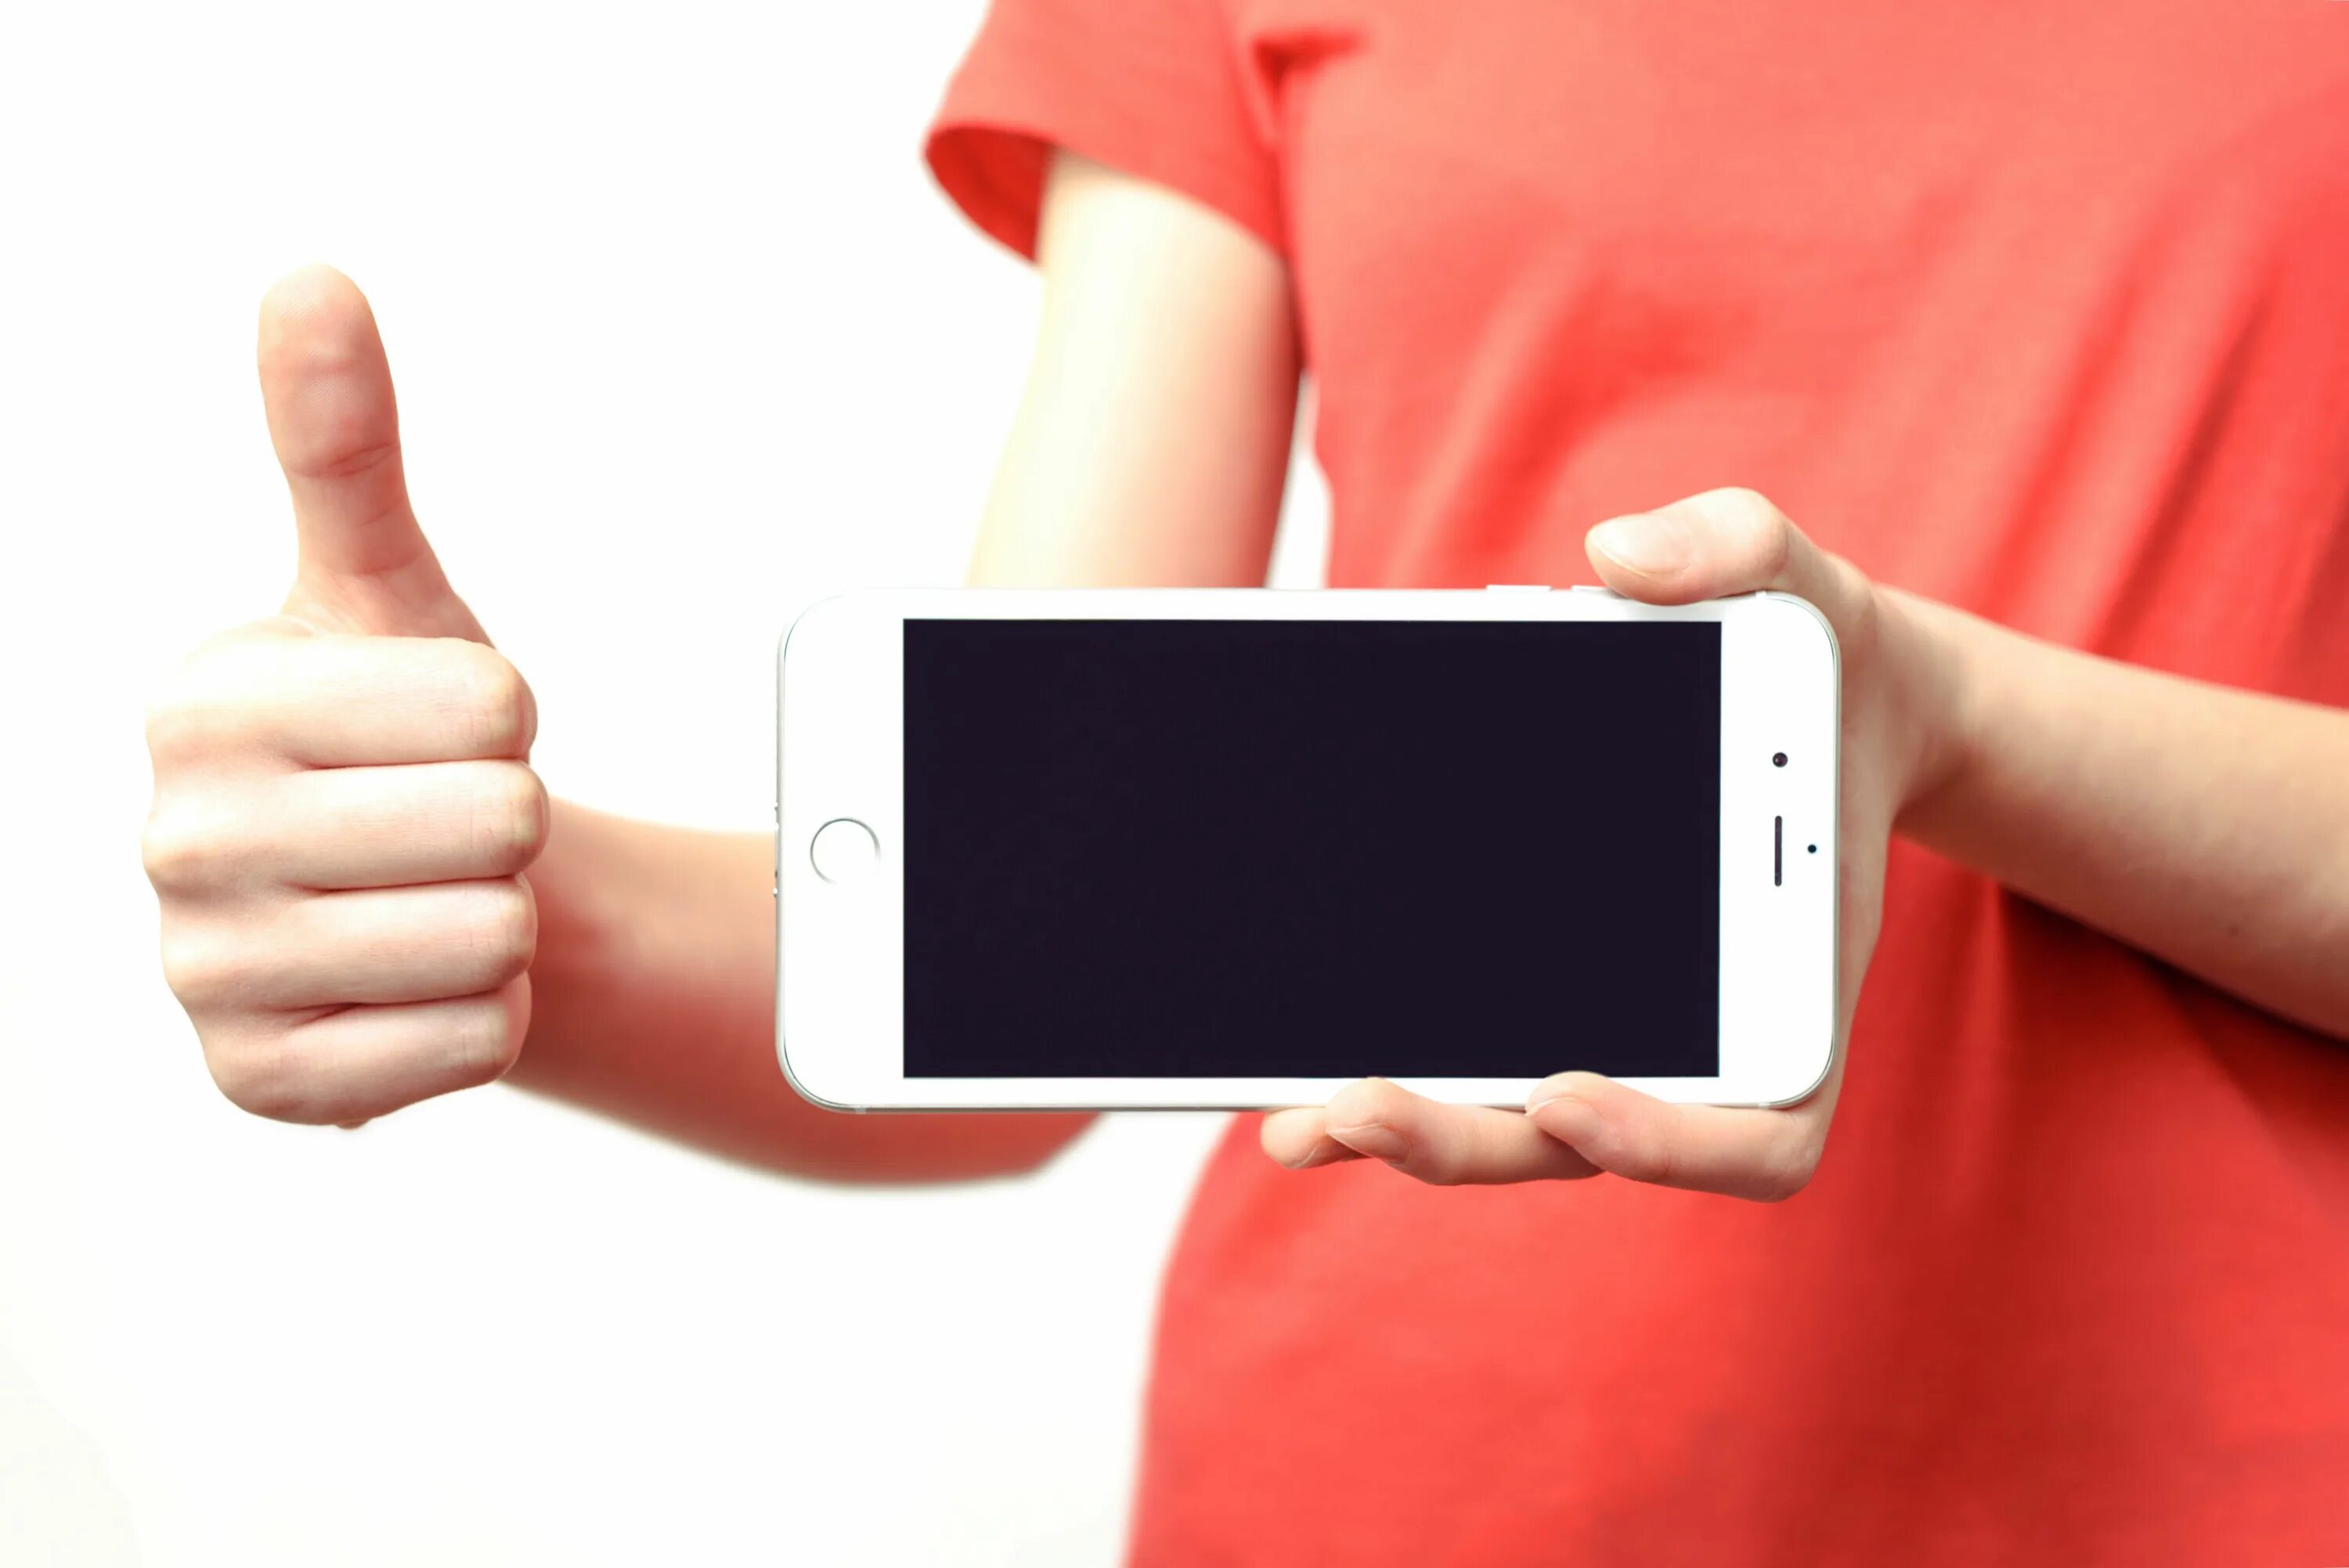 Youtube с выключенным экраном. Телефон в руке. Смартфон в руке. Человек держит телефон. Дервит телефон в рукуе.